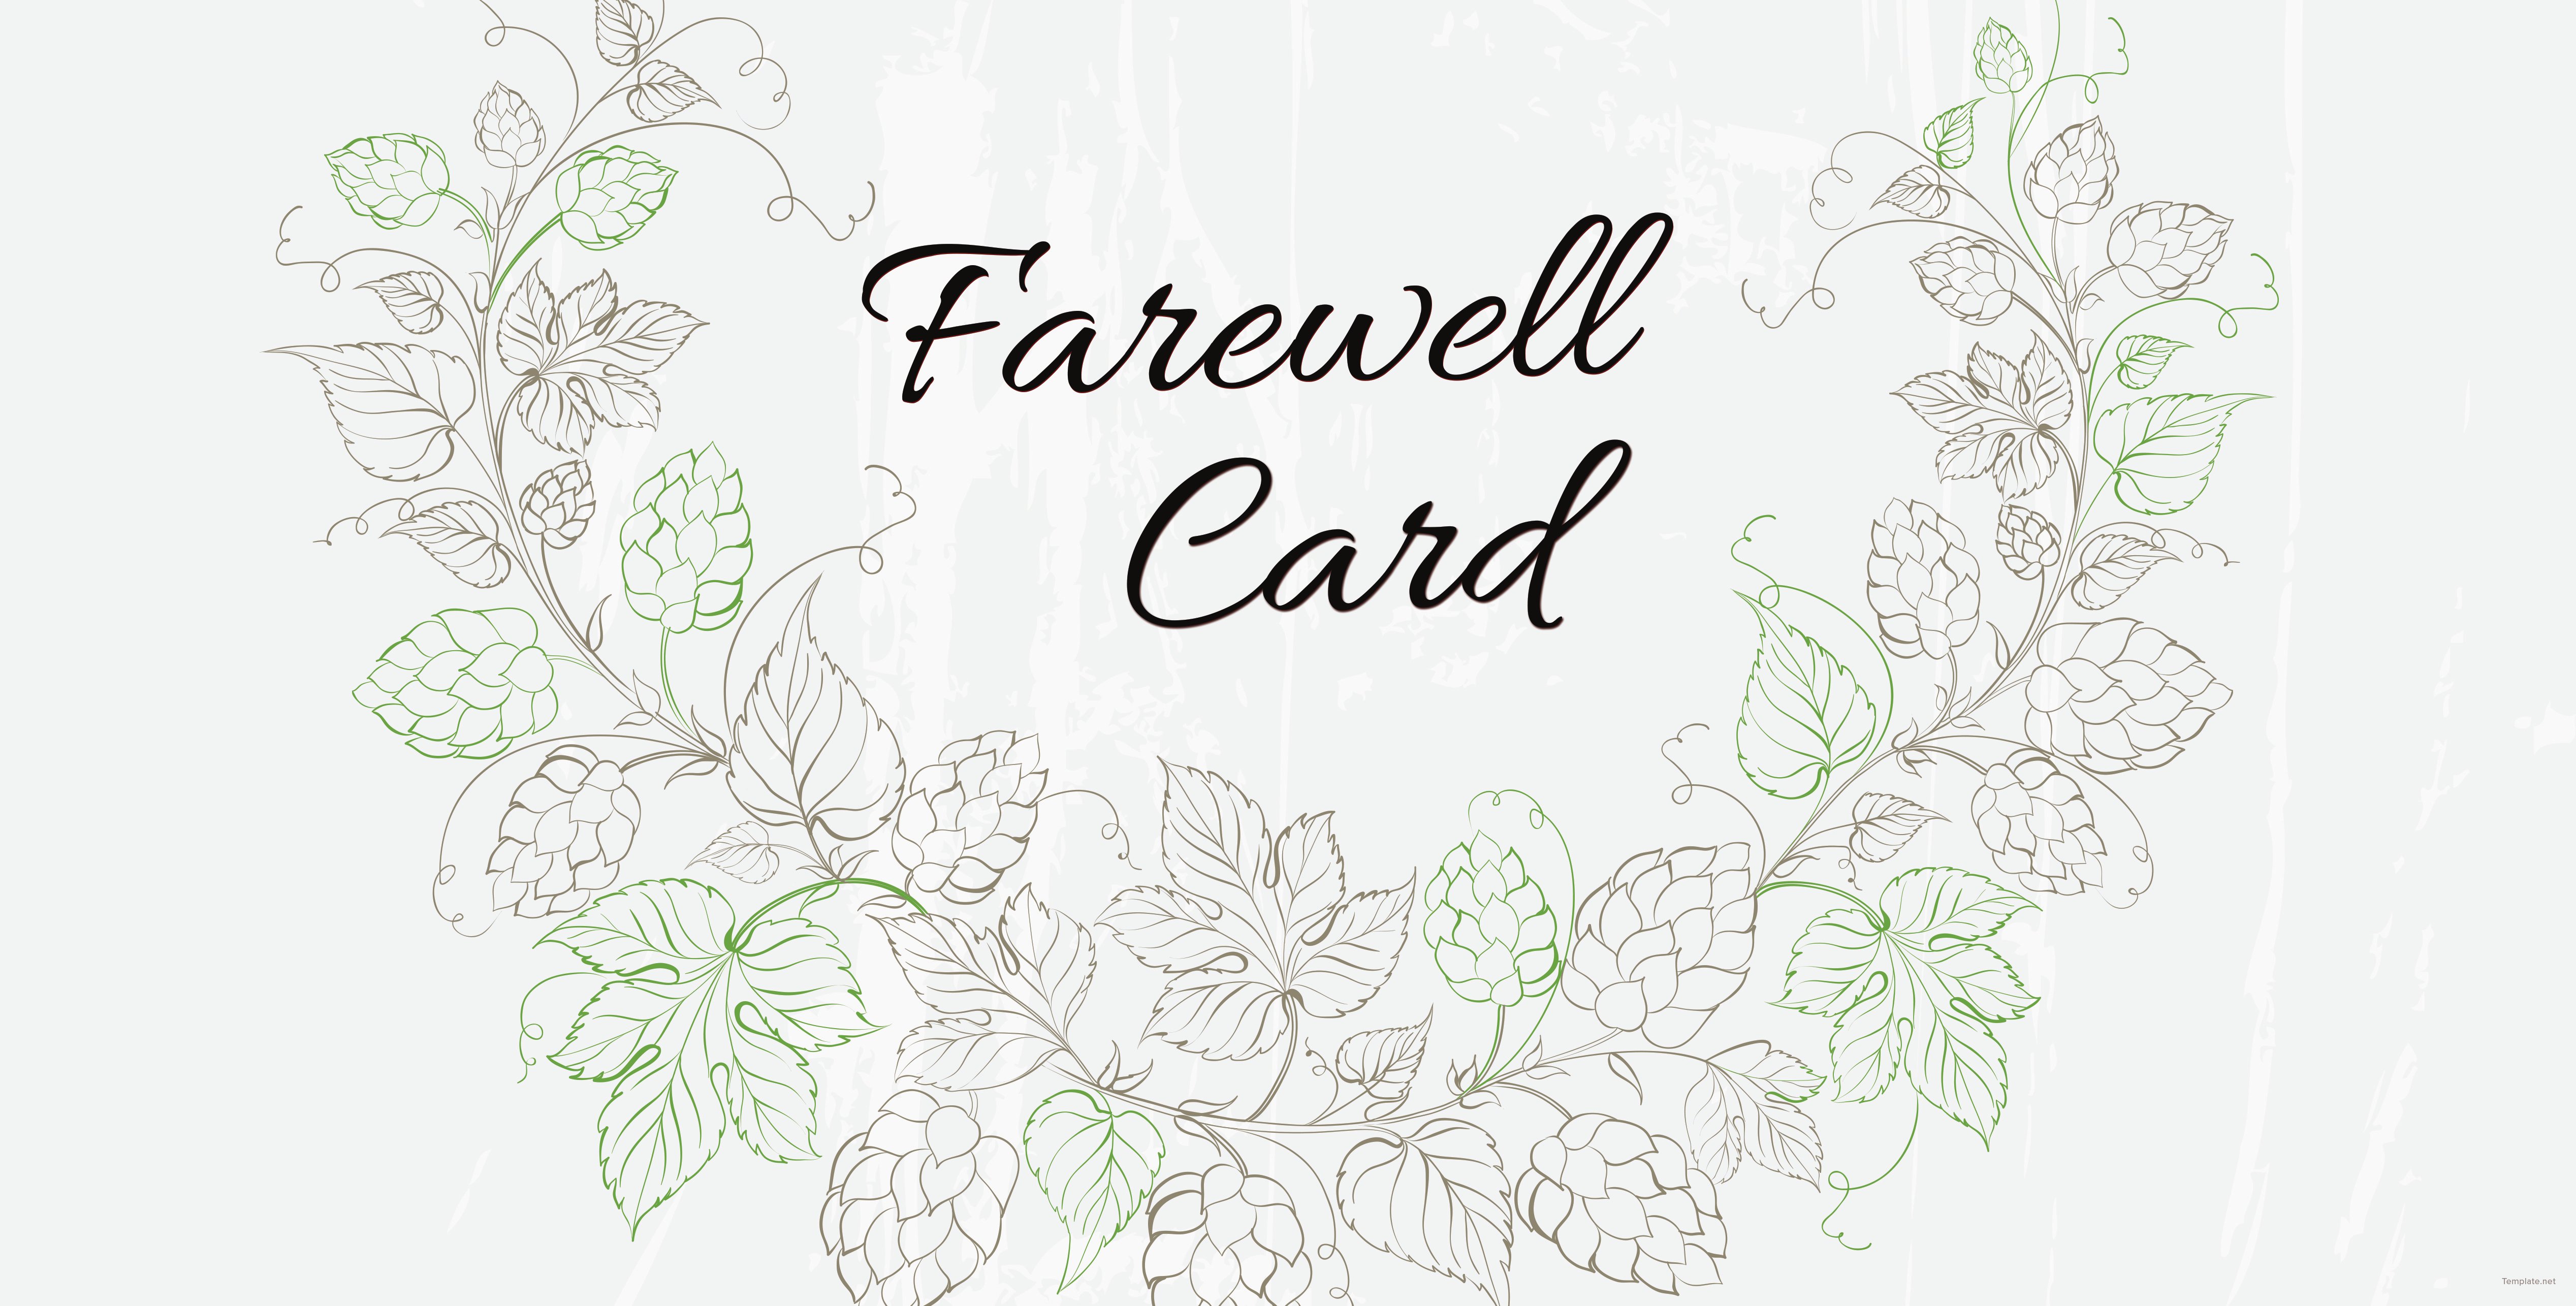 editable-farewell-card-template-printable-blog-calendar-here